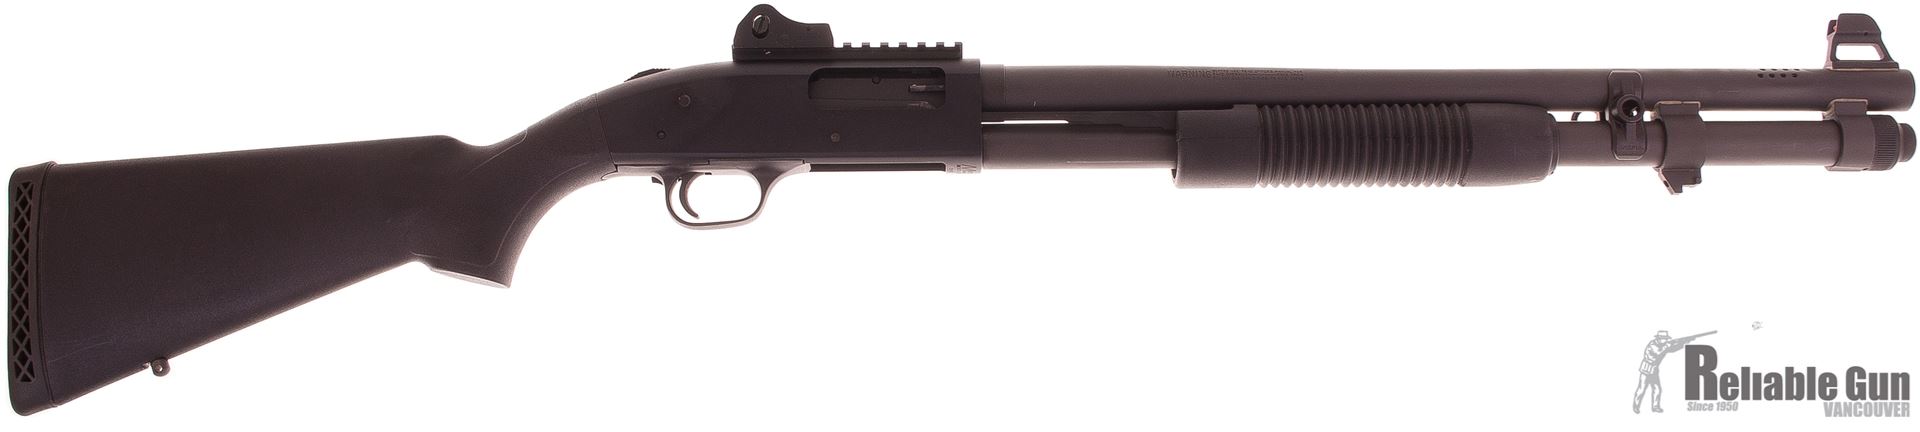 C'est quoi votre dernier achat lié aux guns? (Suite 2) - Page 5 0029725_used-mossberg-590a1-tactical-9-shot-spx-pump-action-shotgun-12ga-3-20-heavy-walled-parkerized-black-